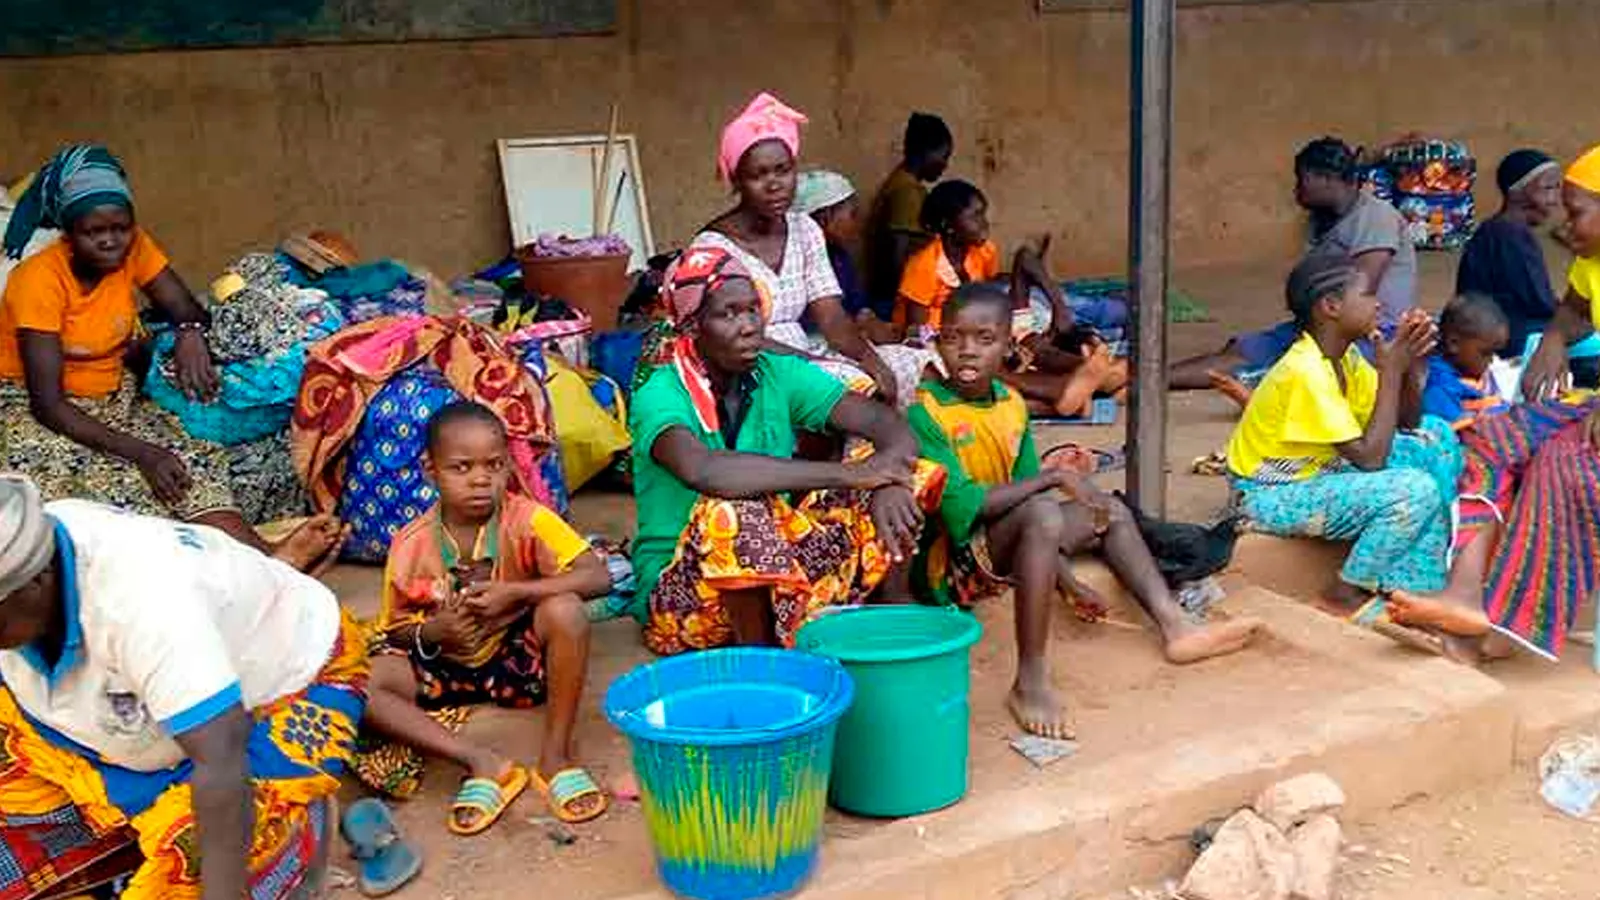 Cristianos desplazados de sus hogares en Burkina Faso.?w=200&h=150